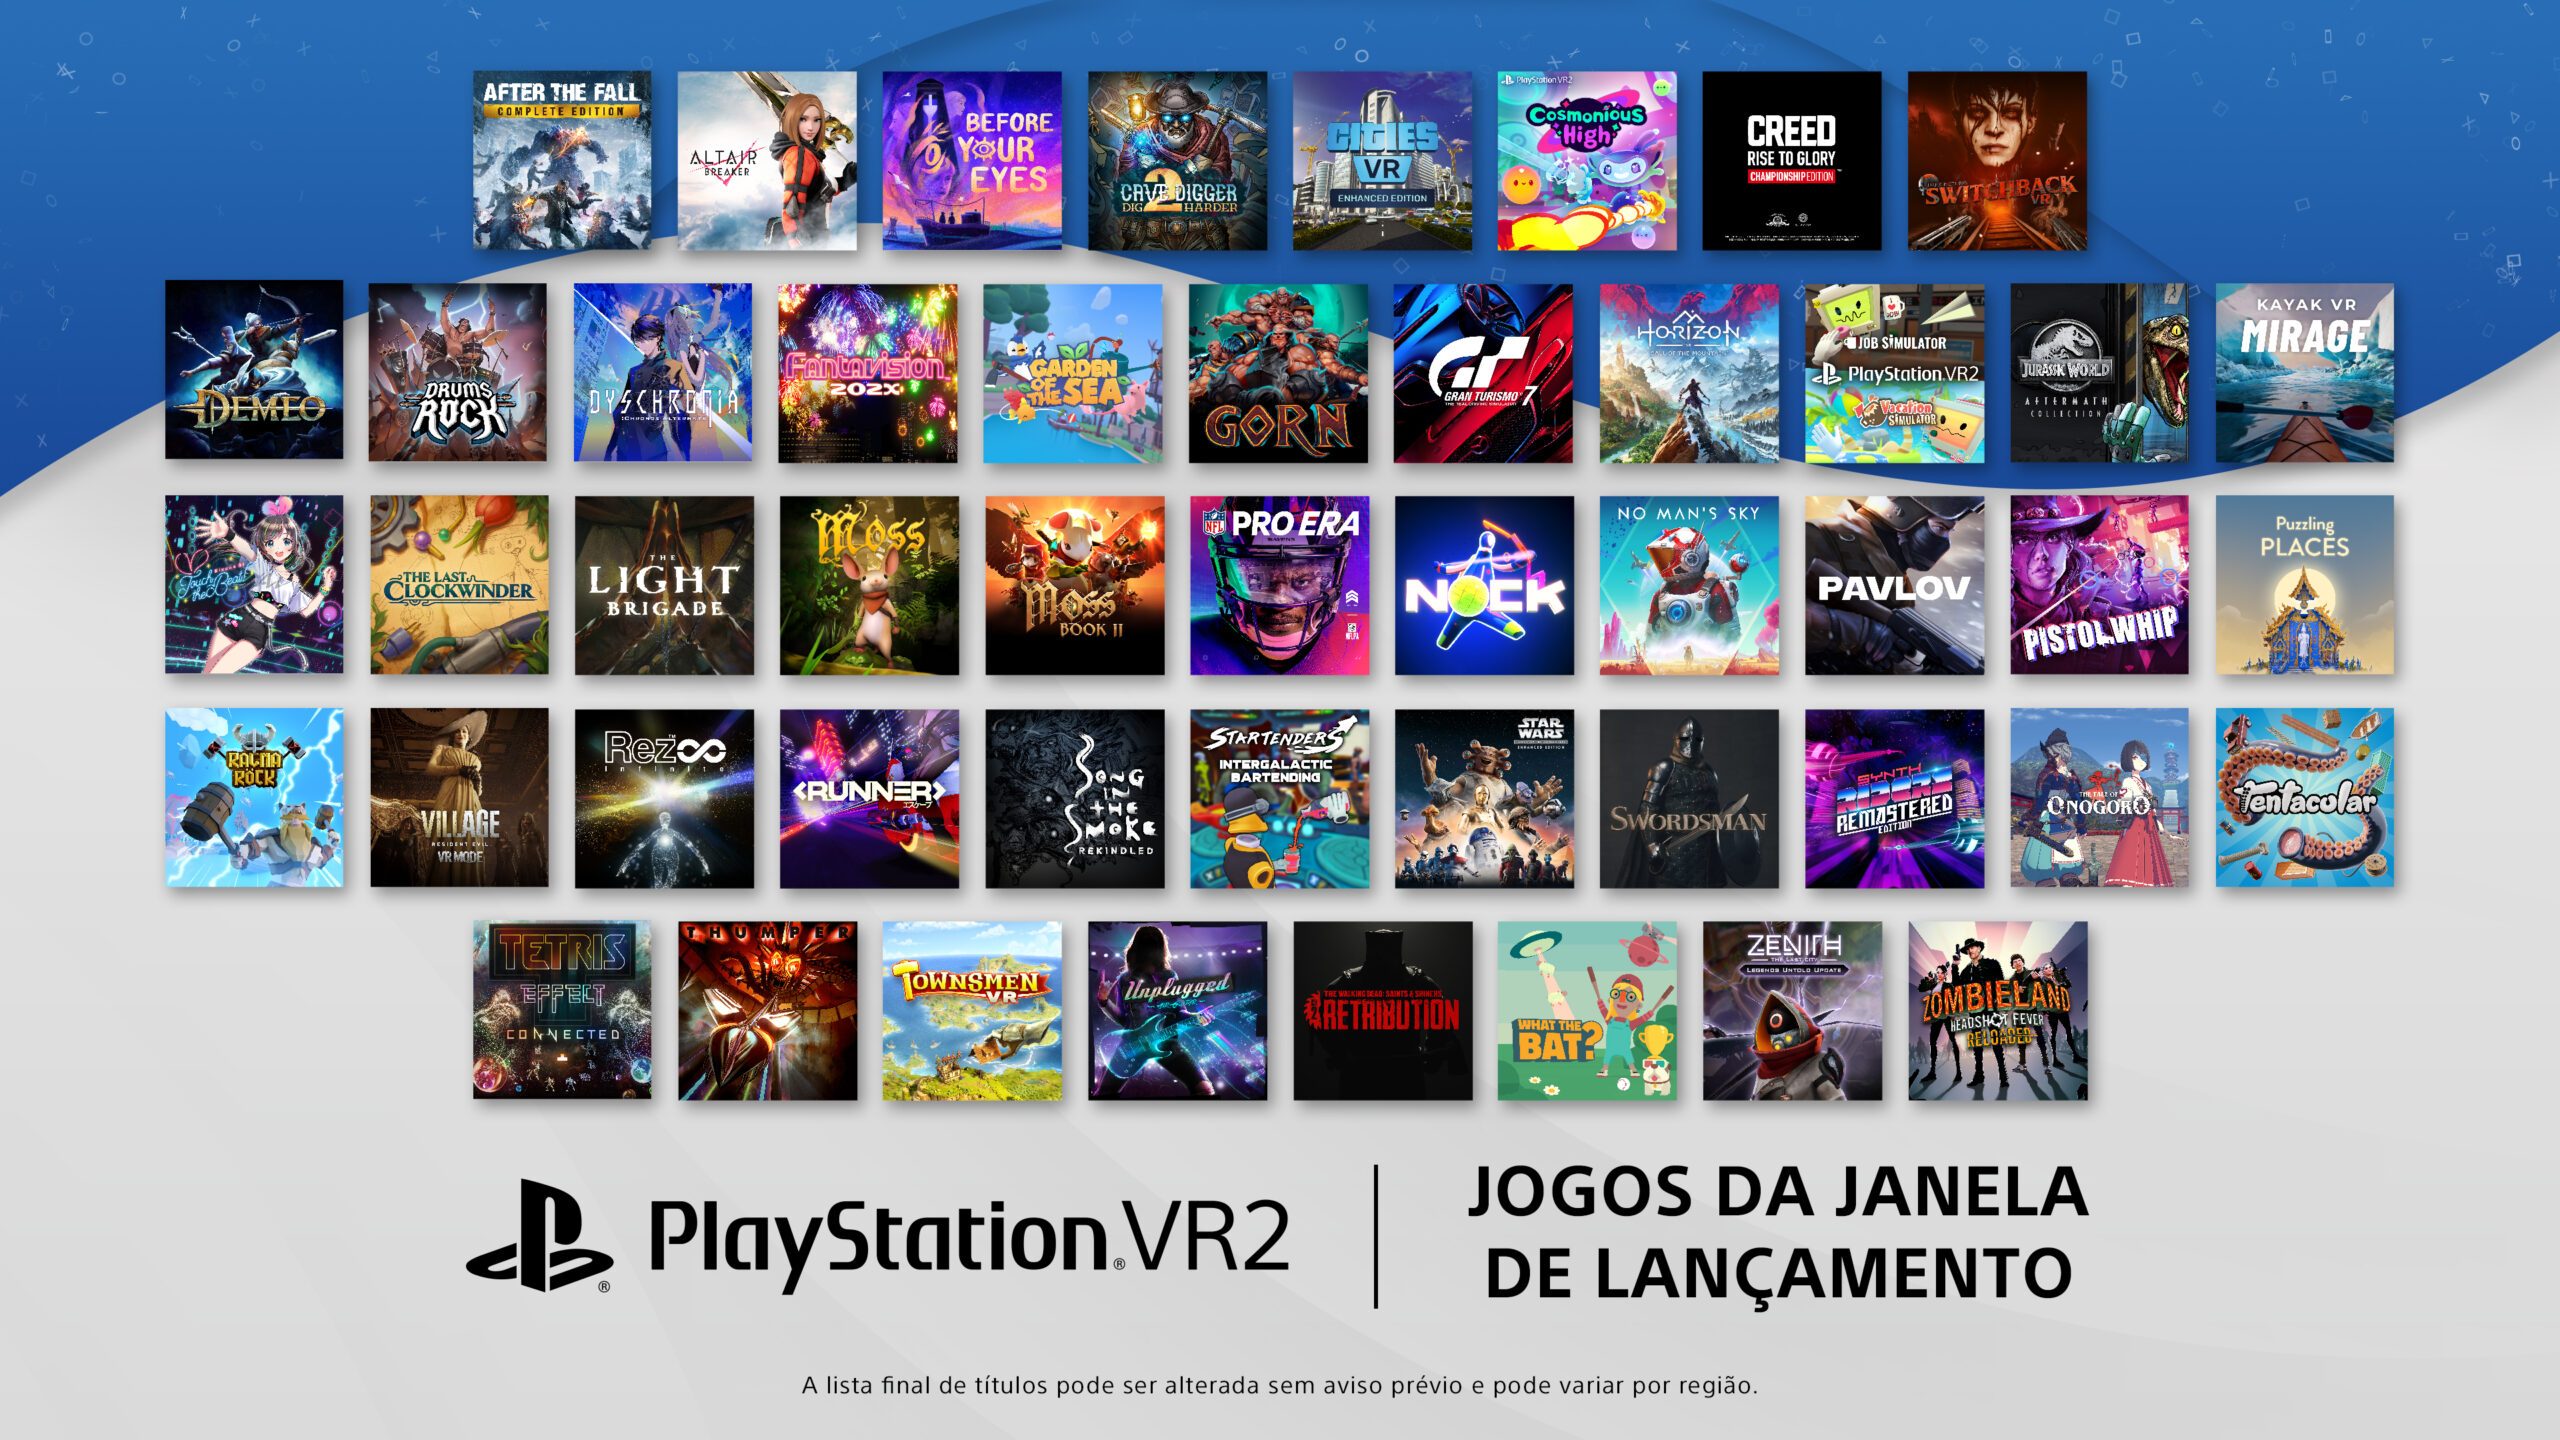 Corra! PlayStation Plus irá remover 11 jogos do catálogo em